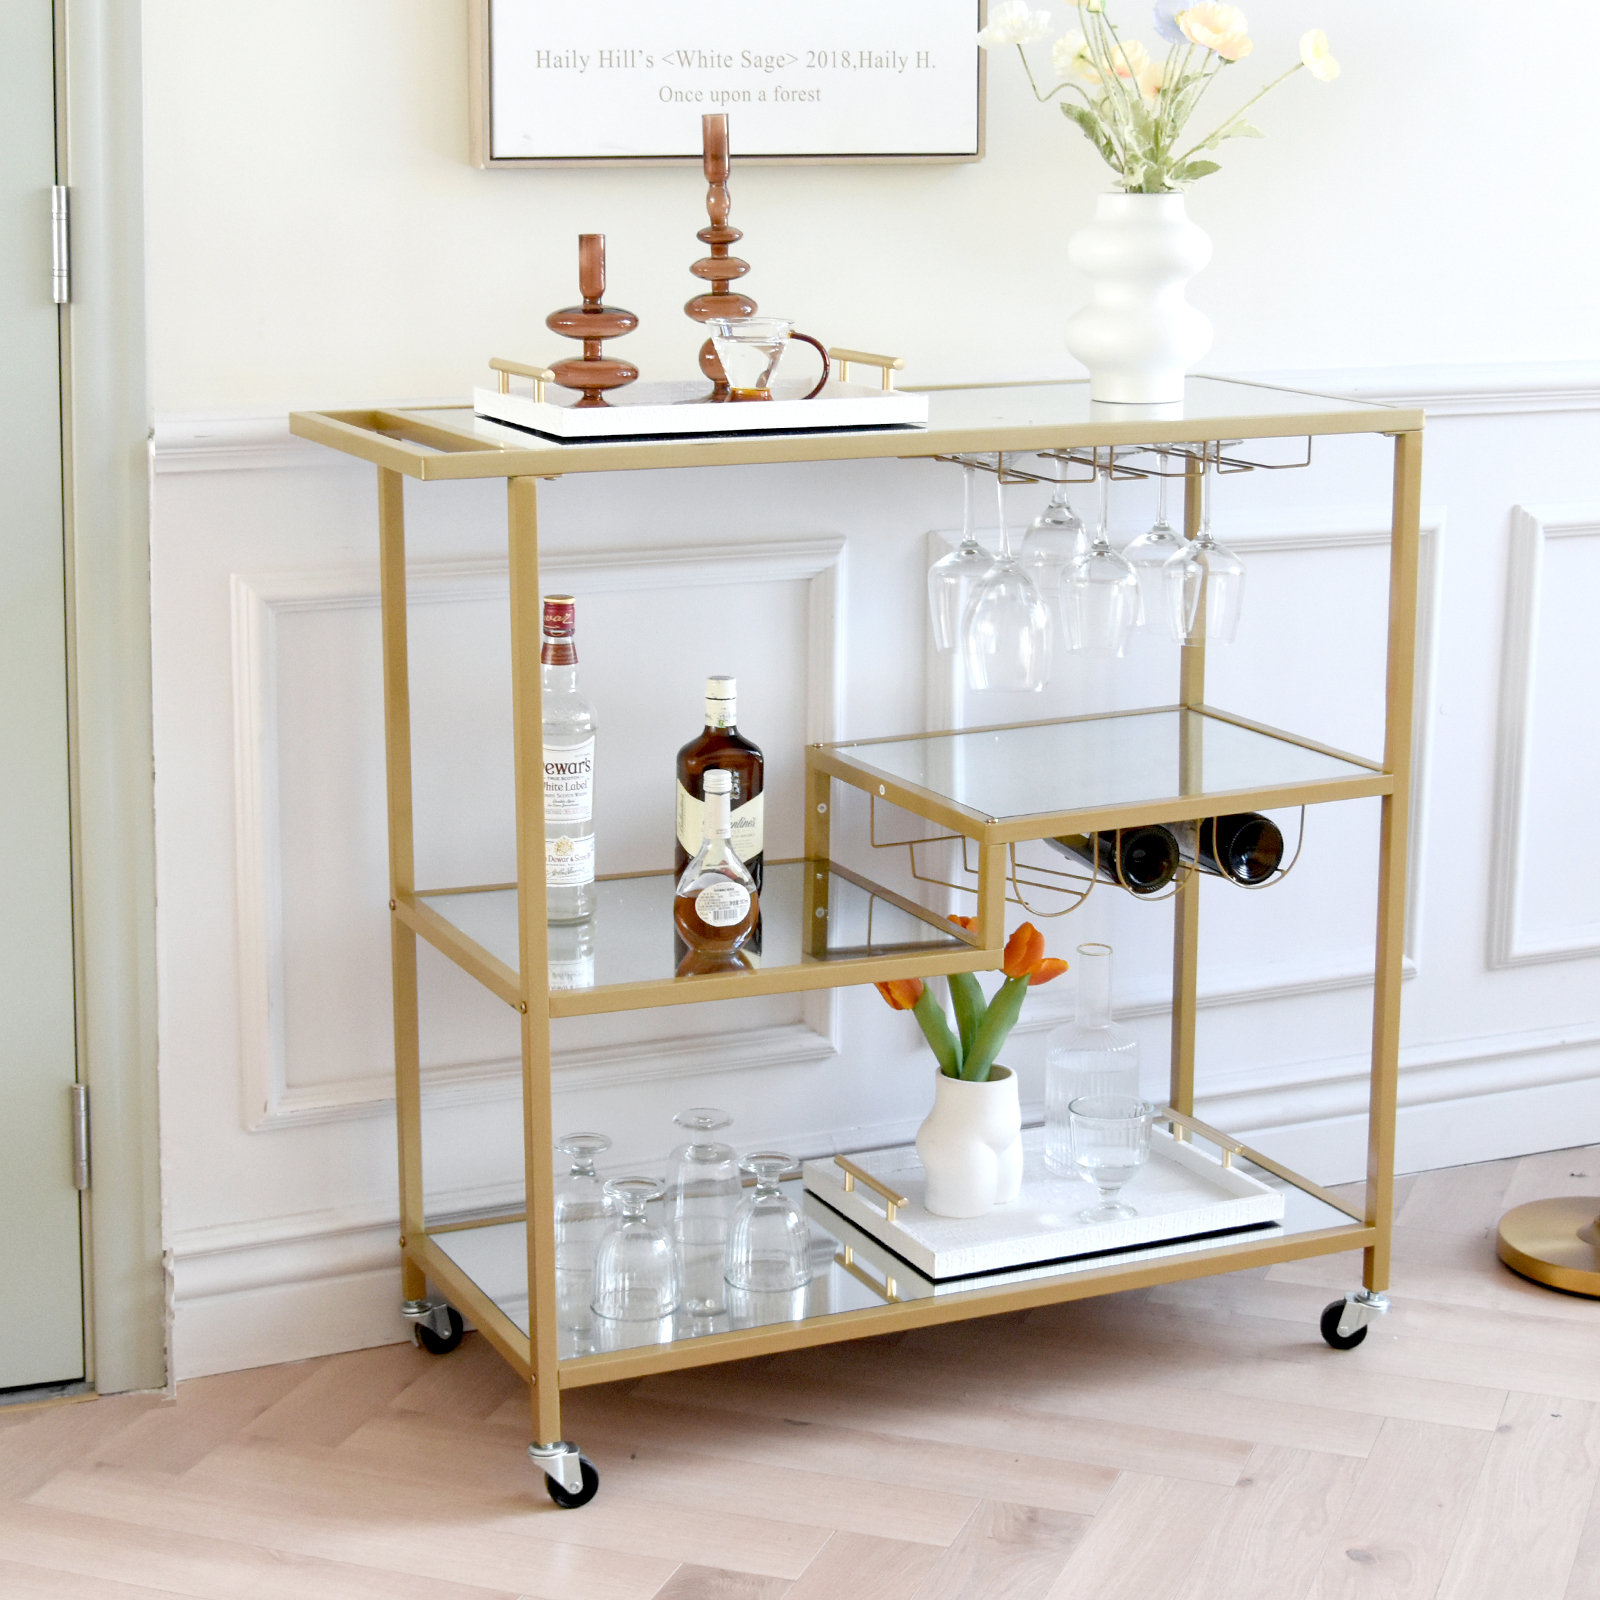 & Gold Mercer41 Serving Gregoriana Mirror Cart Bar | Wayfair Reviews